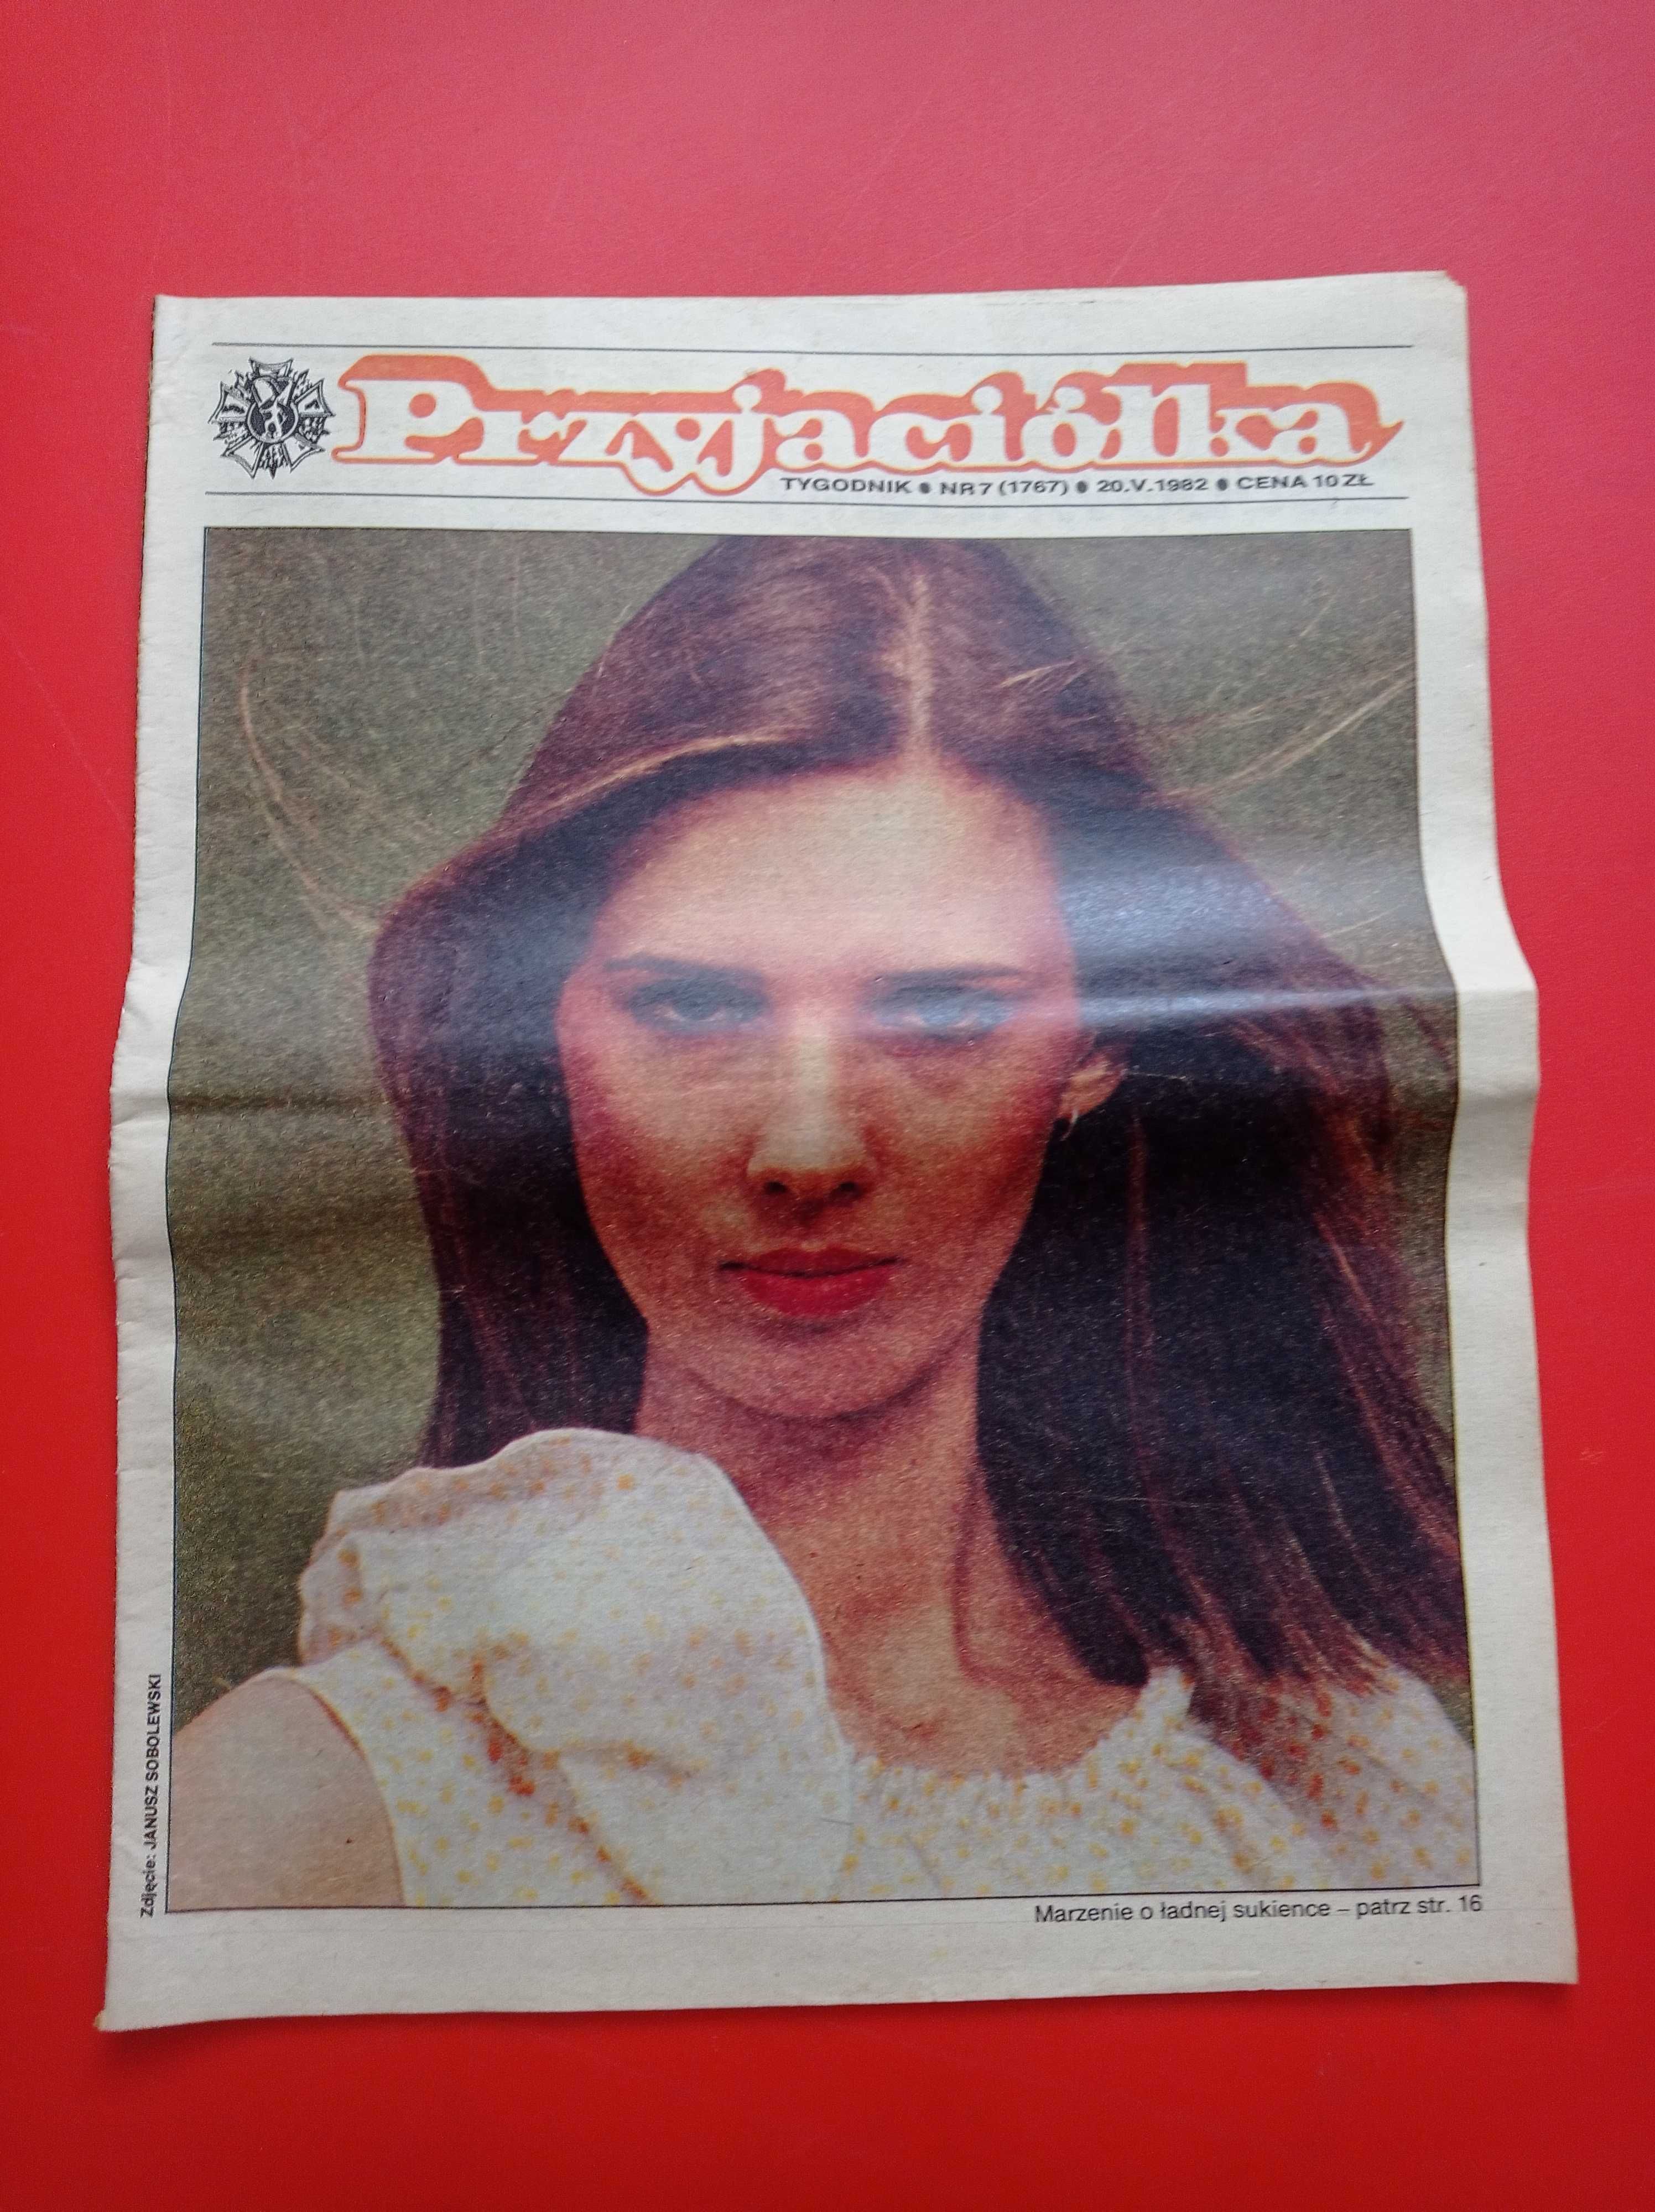 Przyjaciółka tygodnik, nr 7, 20 maja 1982